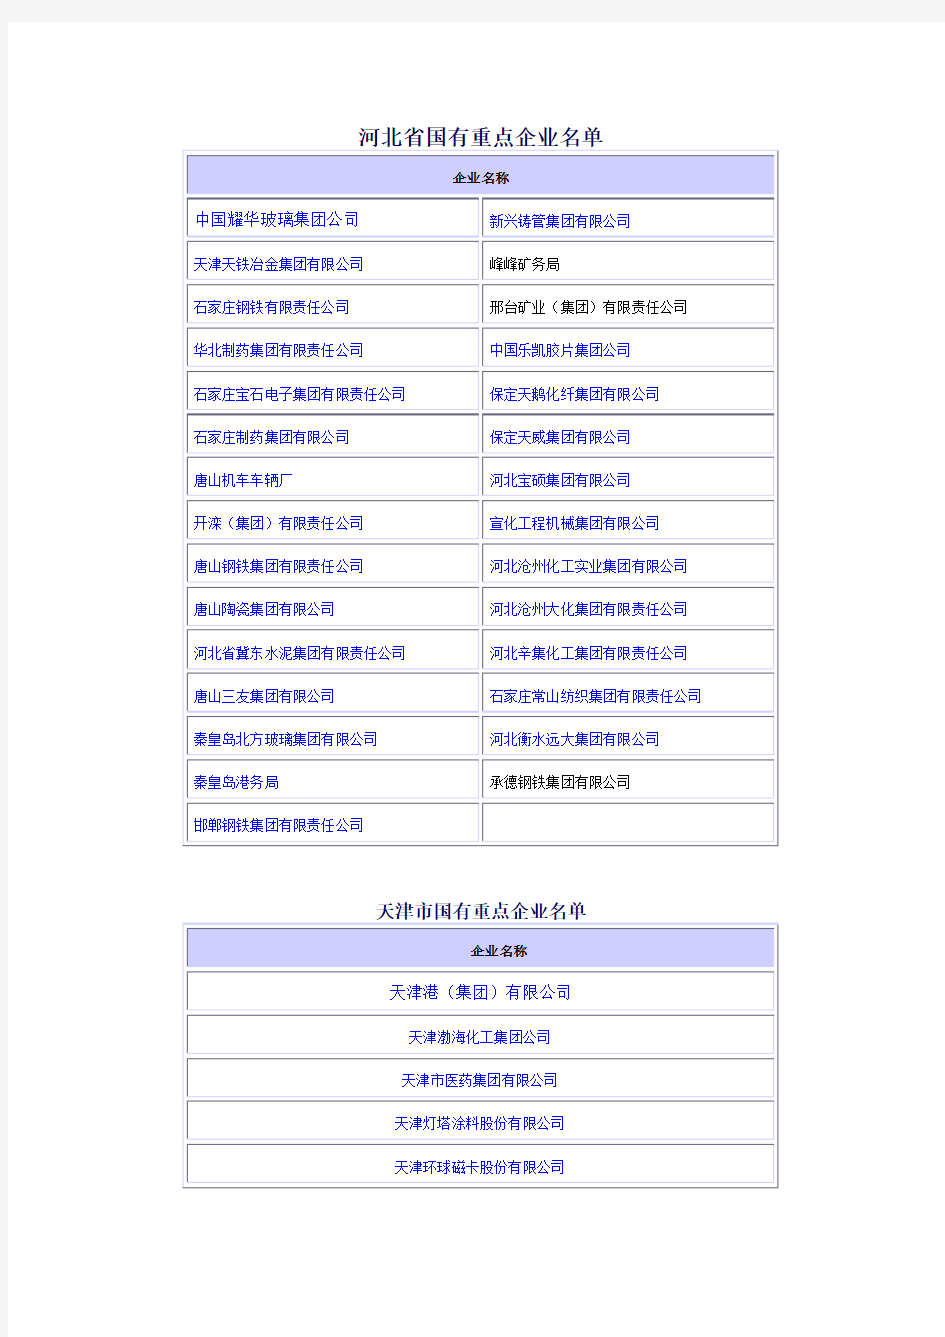 华北地区国有重点企业名单